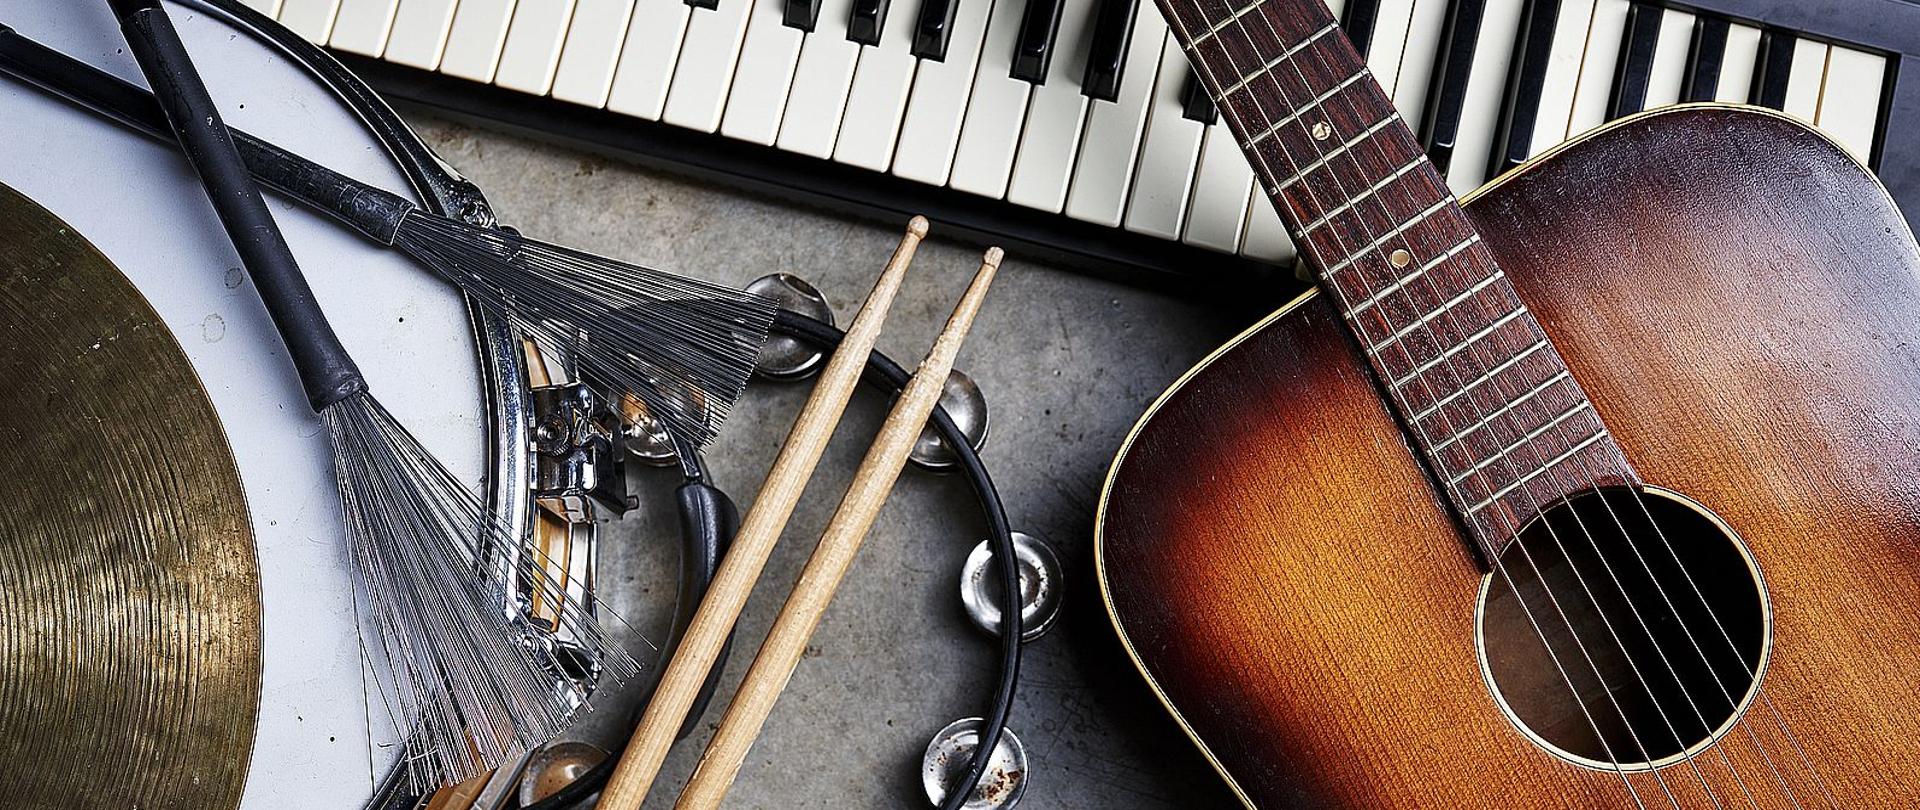 Zdjęcie przedstawia klawiaturę pianina, gitarę oraz instrumenty perkusyjne jak werbel, tamburyn i talerz perkusyjny leżące na podłodze.